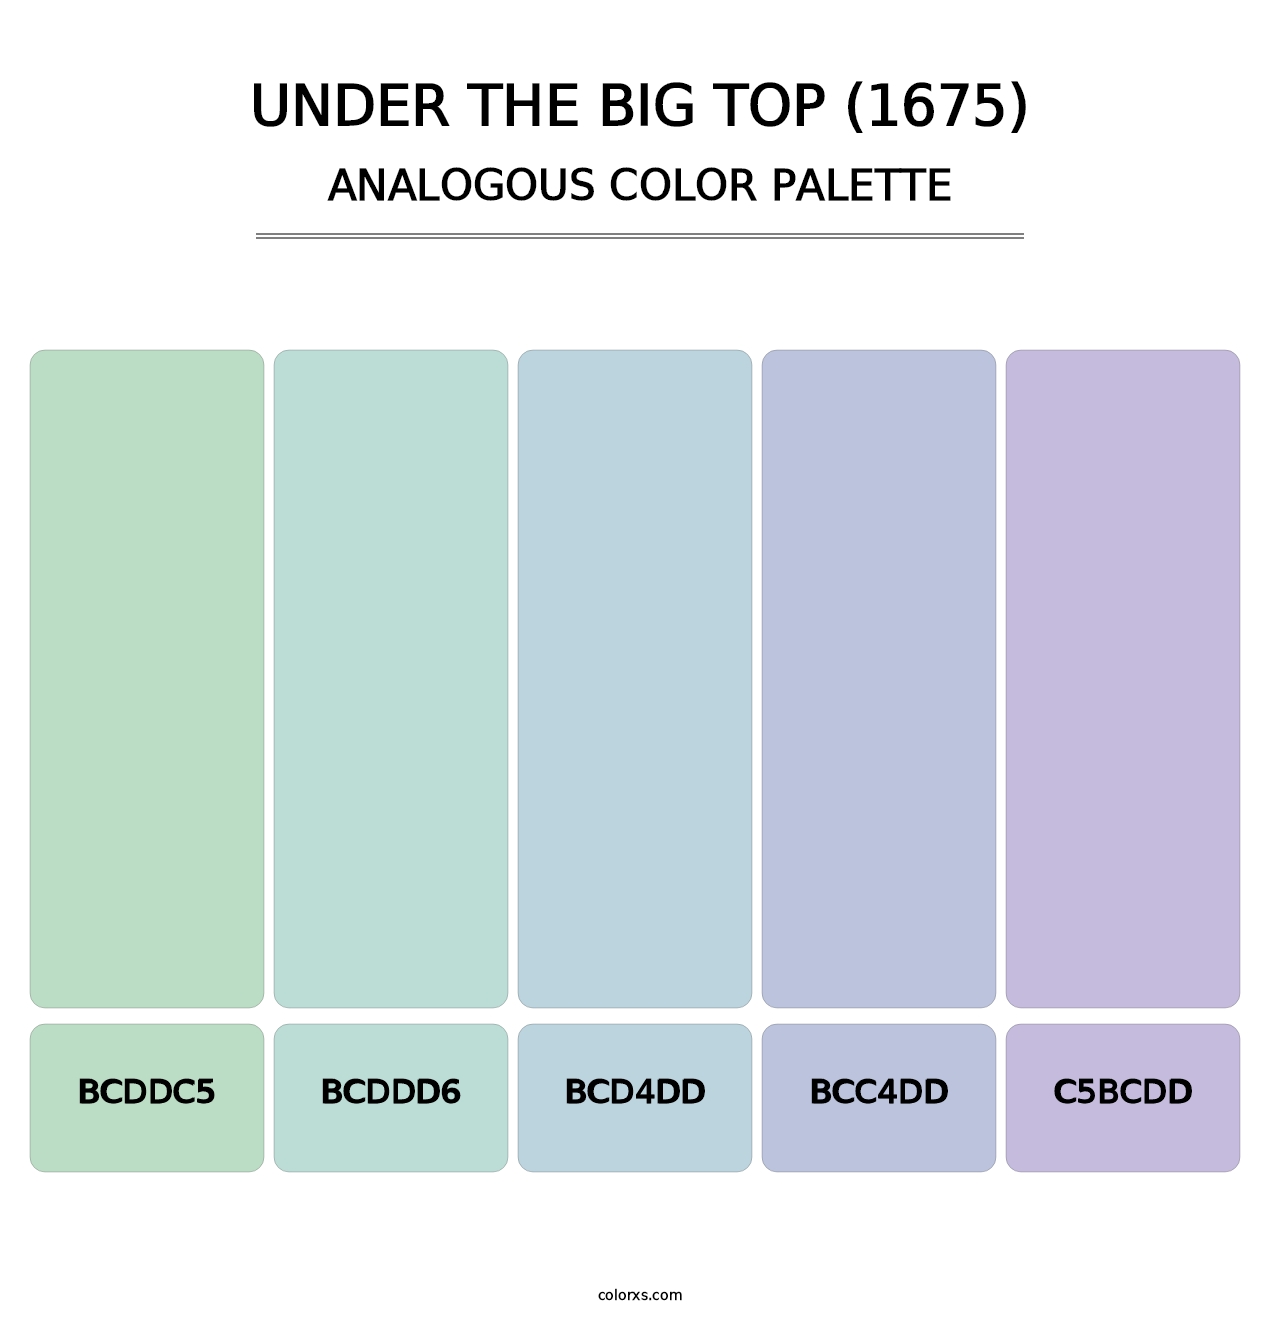 Under the Big Top (1675) - Analogous Color Palette